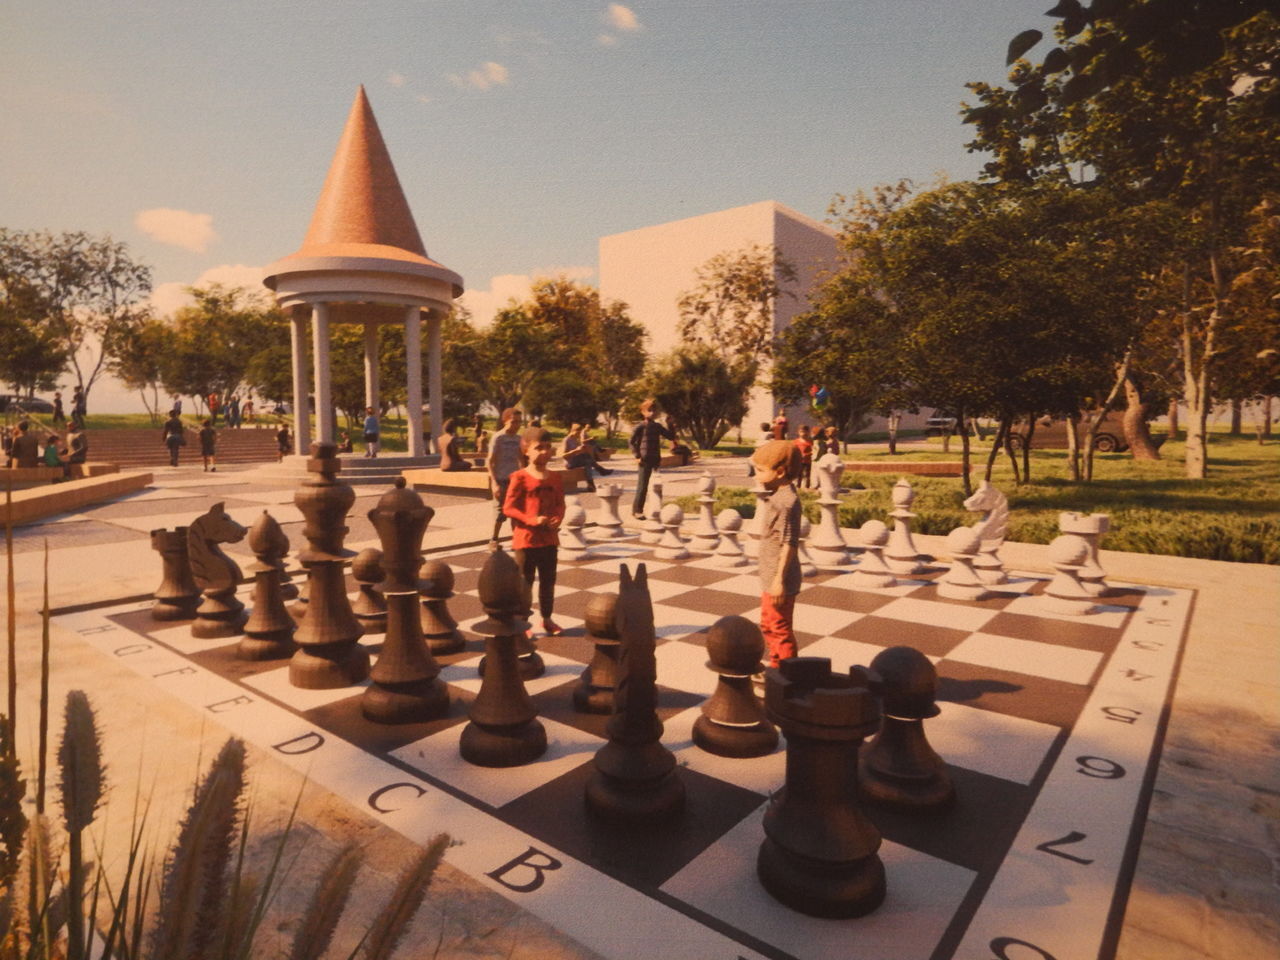 Сквер врачей и гигантские шахматы – реконструкция зеленых зон пройдет в Хабаровске (ФОТО; ВИДЕО)